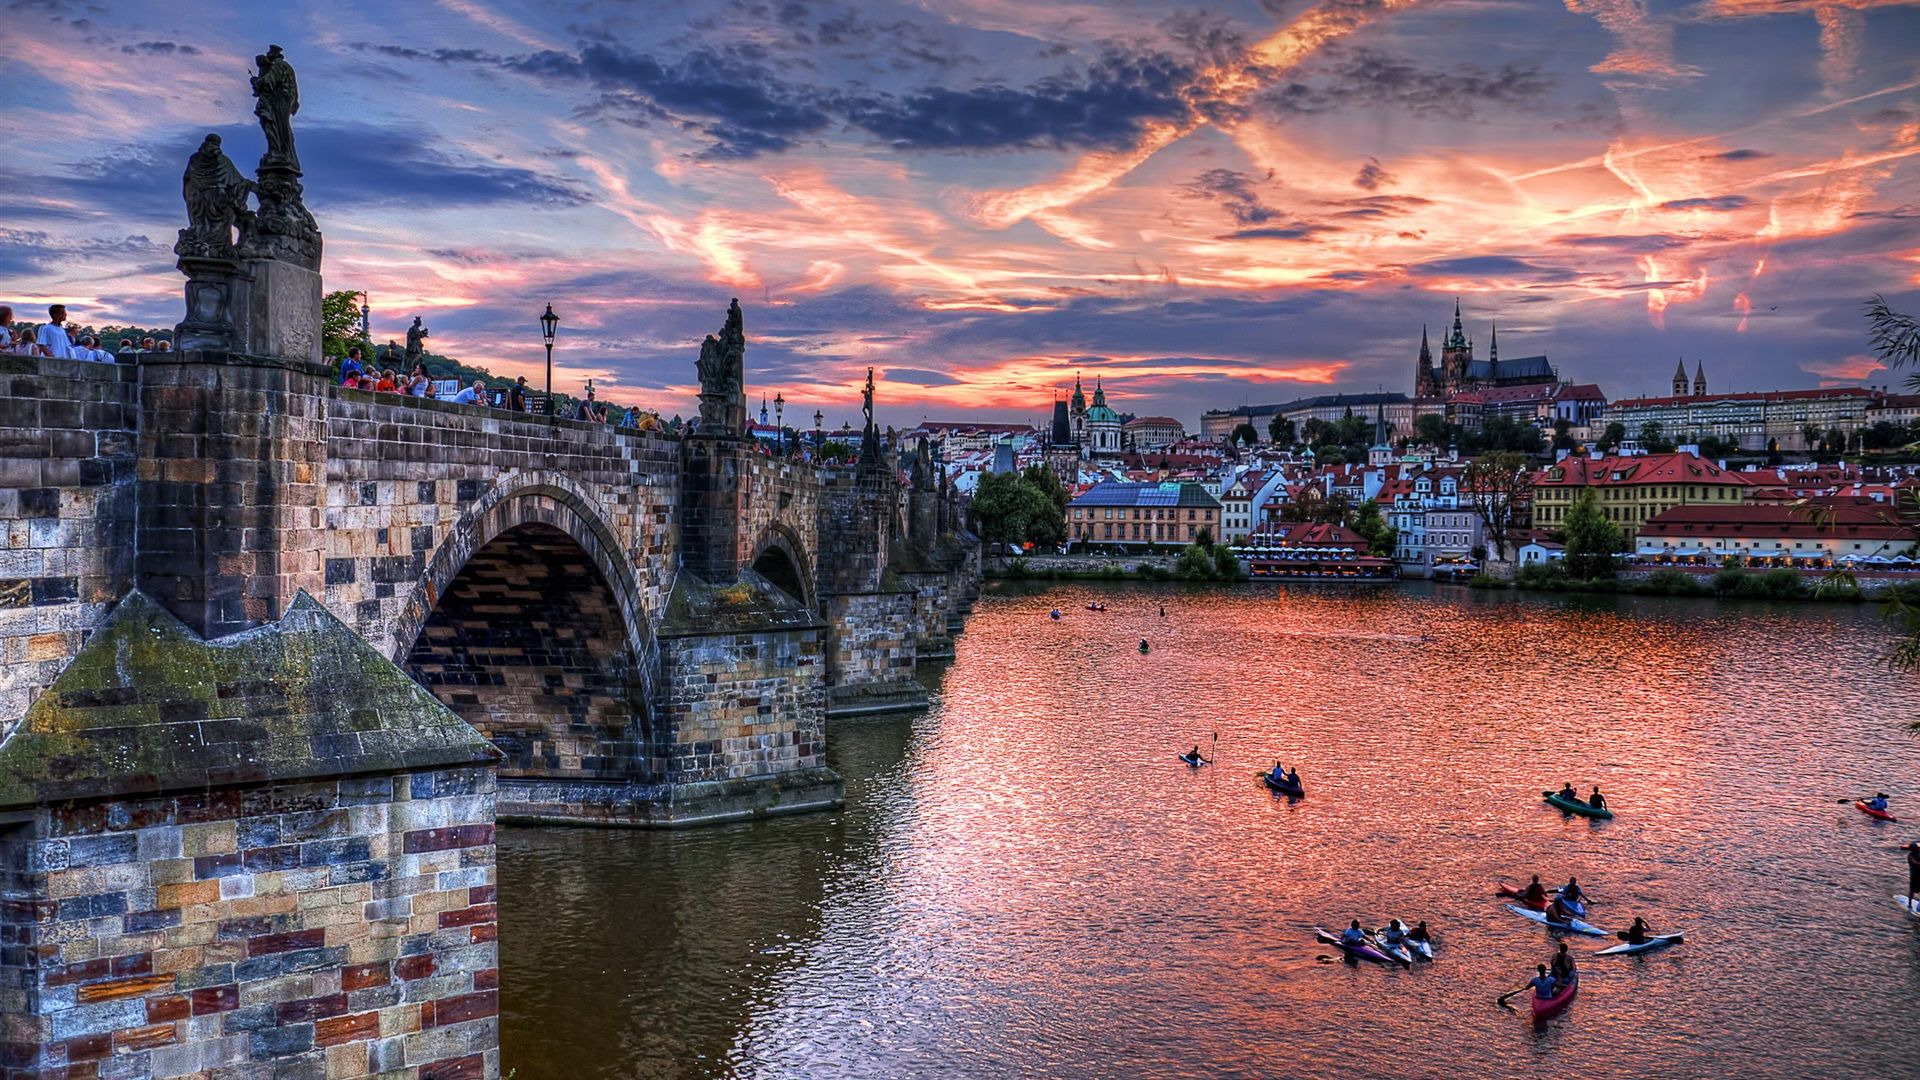  Das Schönste Der Welt Hintergrundbild 1920x1080. Tschechien, Prag, Stadt, Brücke, Fluss, Abend, Häuser, Wolken 2560x1600 HD Hintergrundbilder, HD, Bild